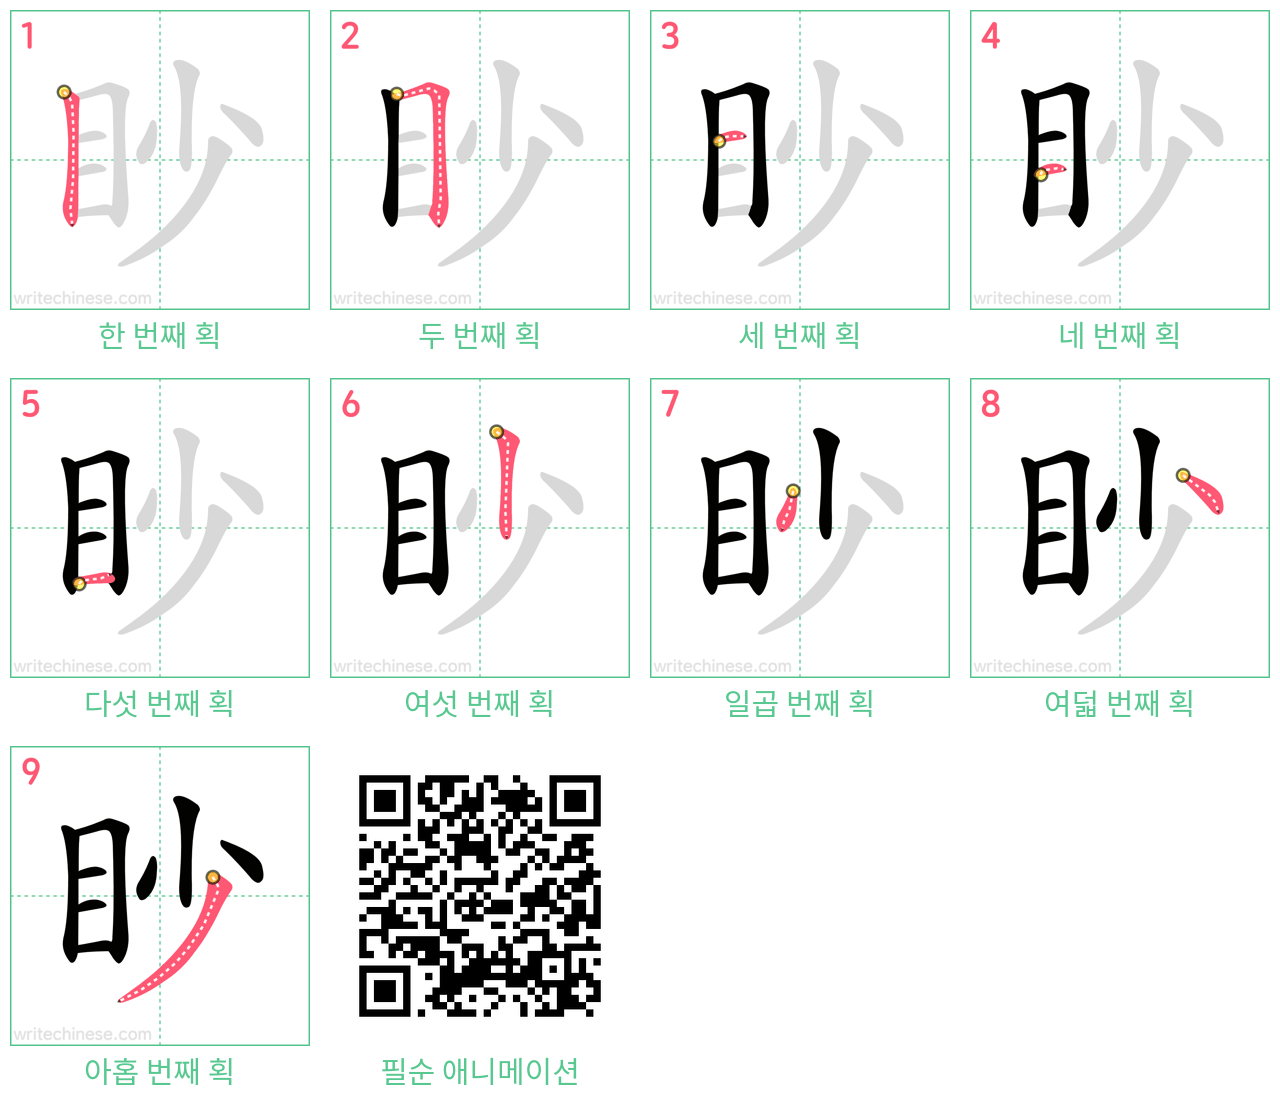 眇 step-by-step stroke order diagrams